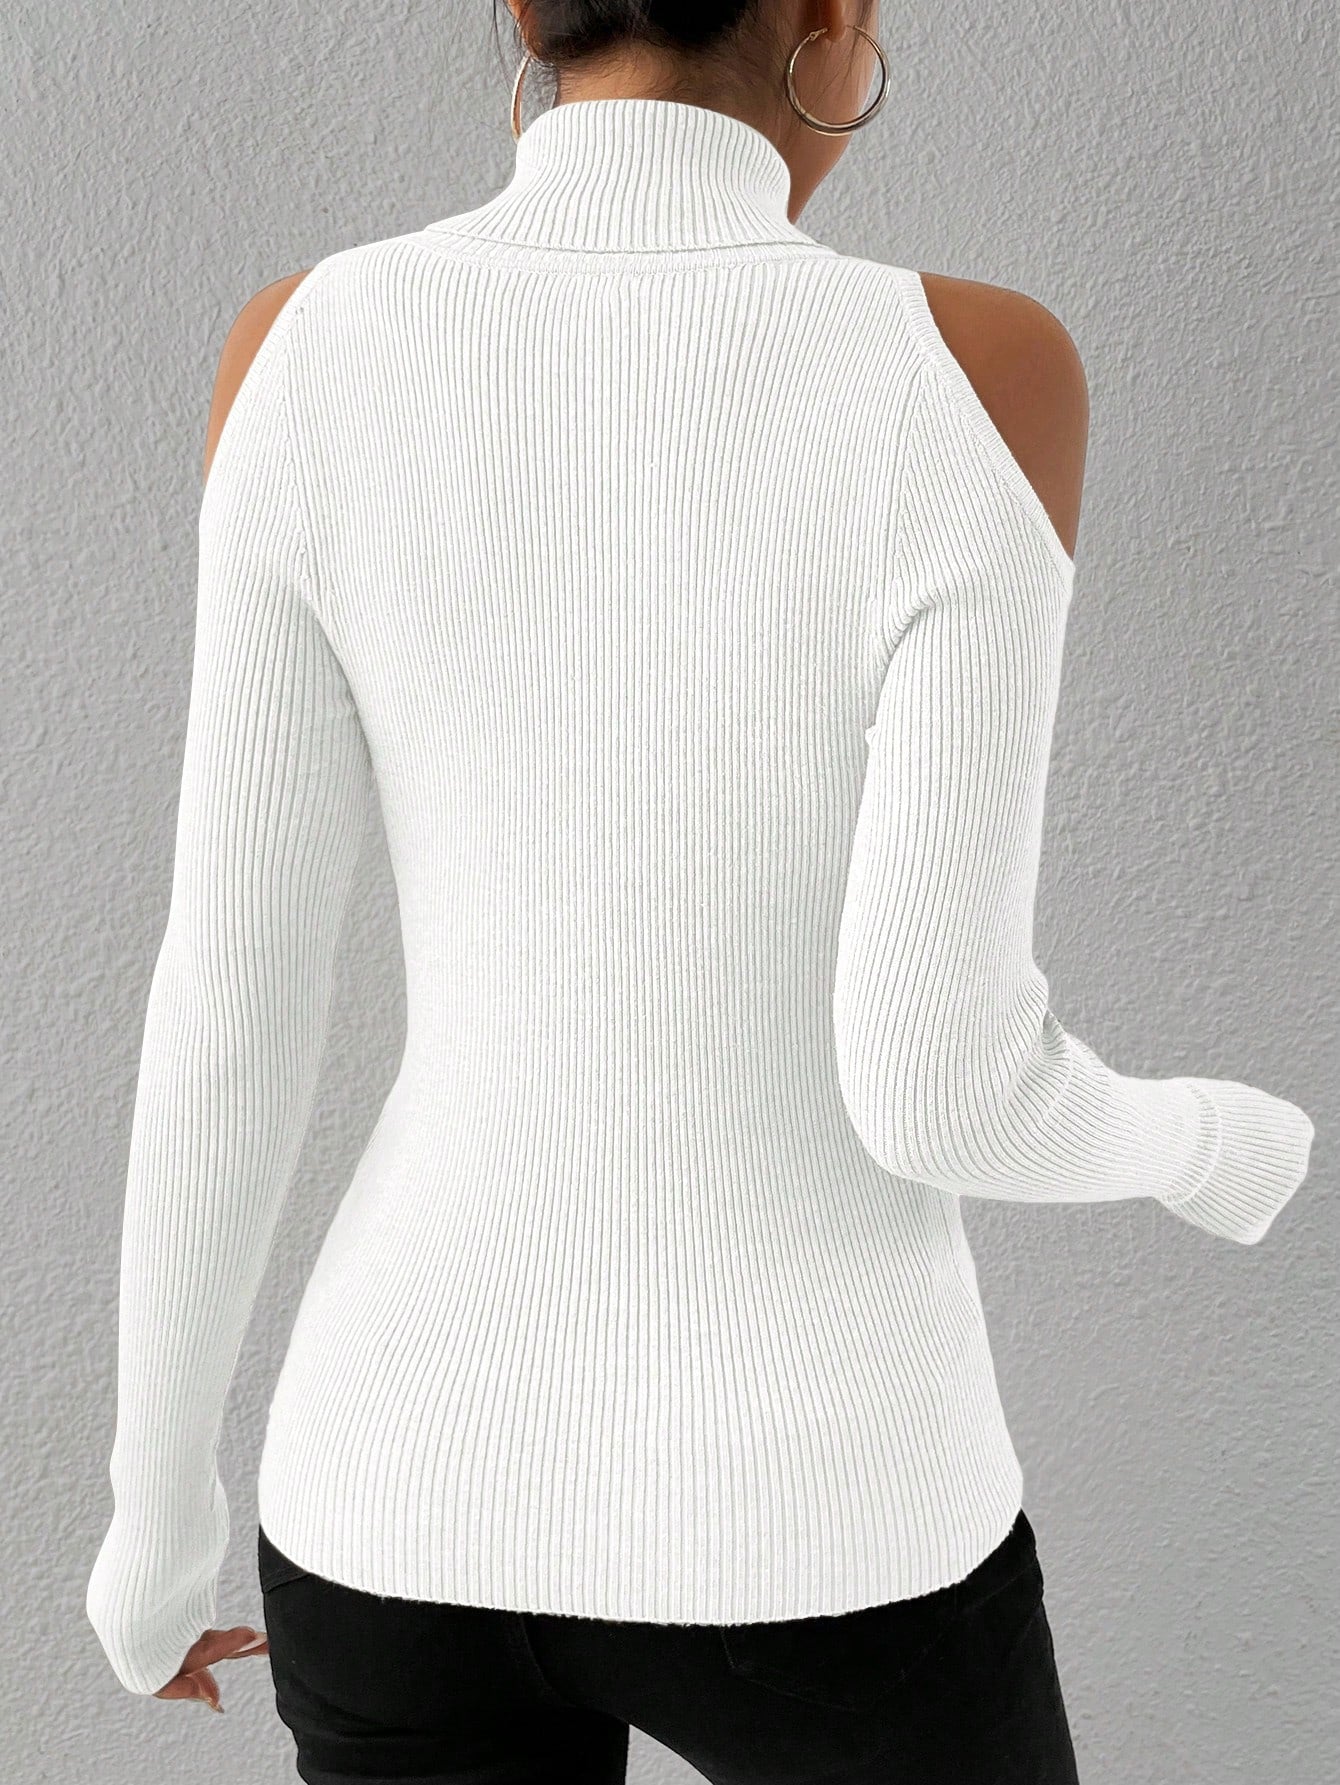 Privé Turtleneck Cold Shoulder Sweater